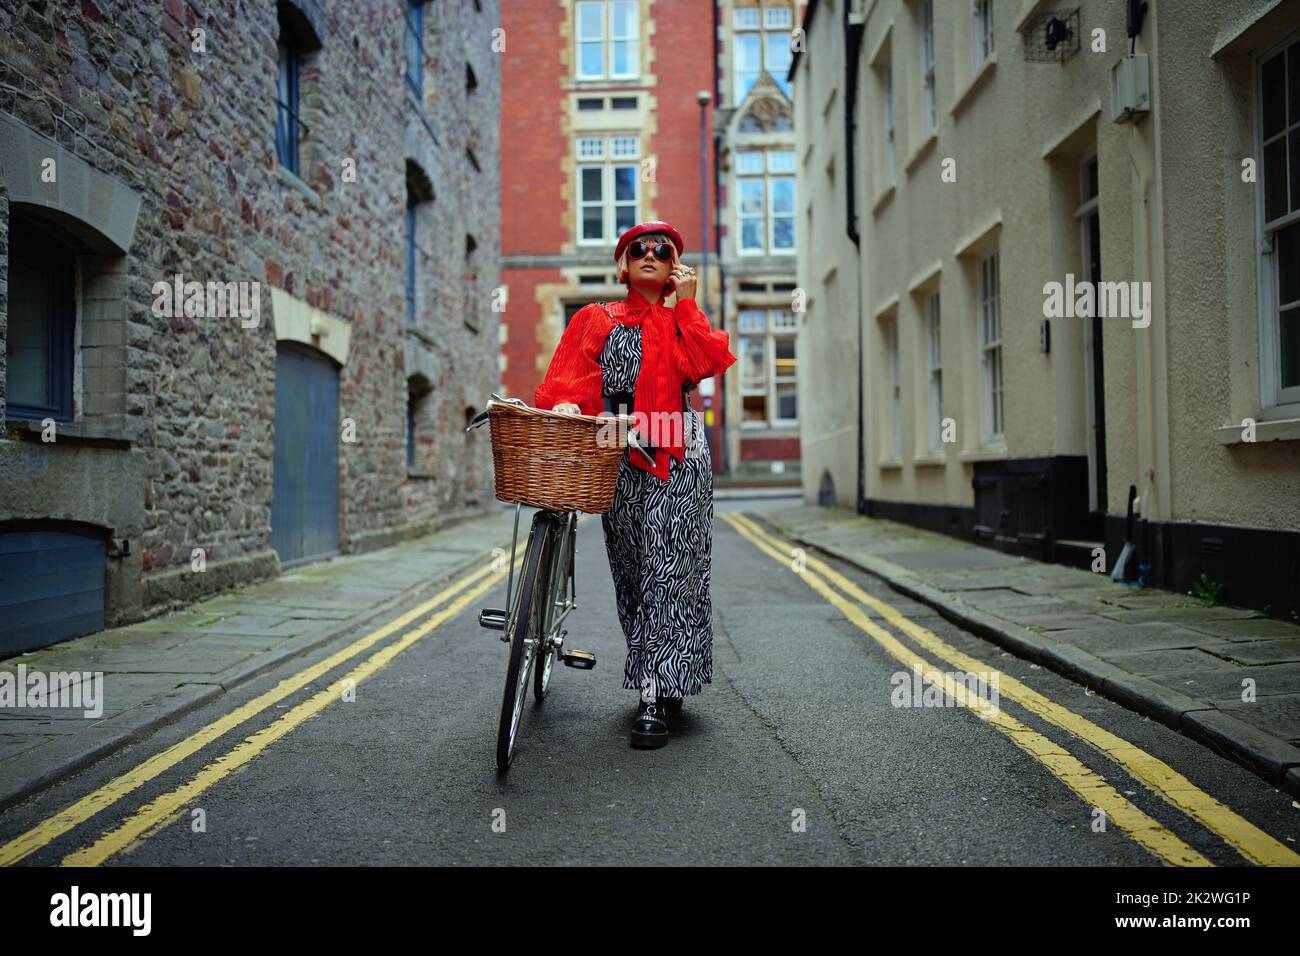 Meg Cox, styliste de mode éco-responsable, a choisi une tenue complète issue d'une grande durabilité, incluant des accessoires et sa bicyclette. Elle se présente dans le centre-ville de Bristol dans le cadre de la première semaine de la mode éco-responsable du Royaume-Uni, qui se joue dans tout le pays. Date de la photo: Vendredi 23 septembre 2022. Banque D'Images